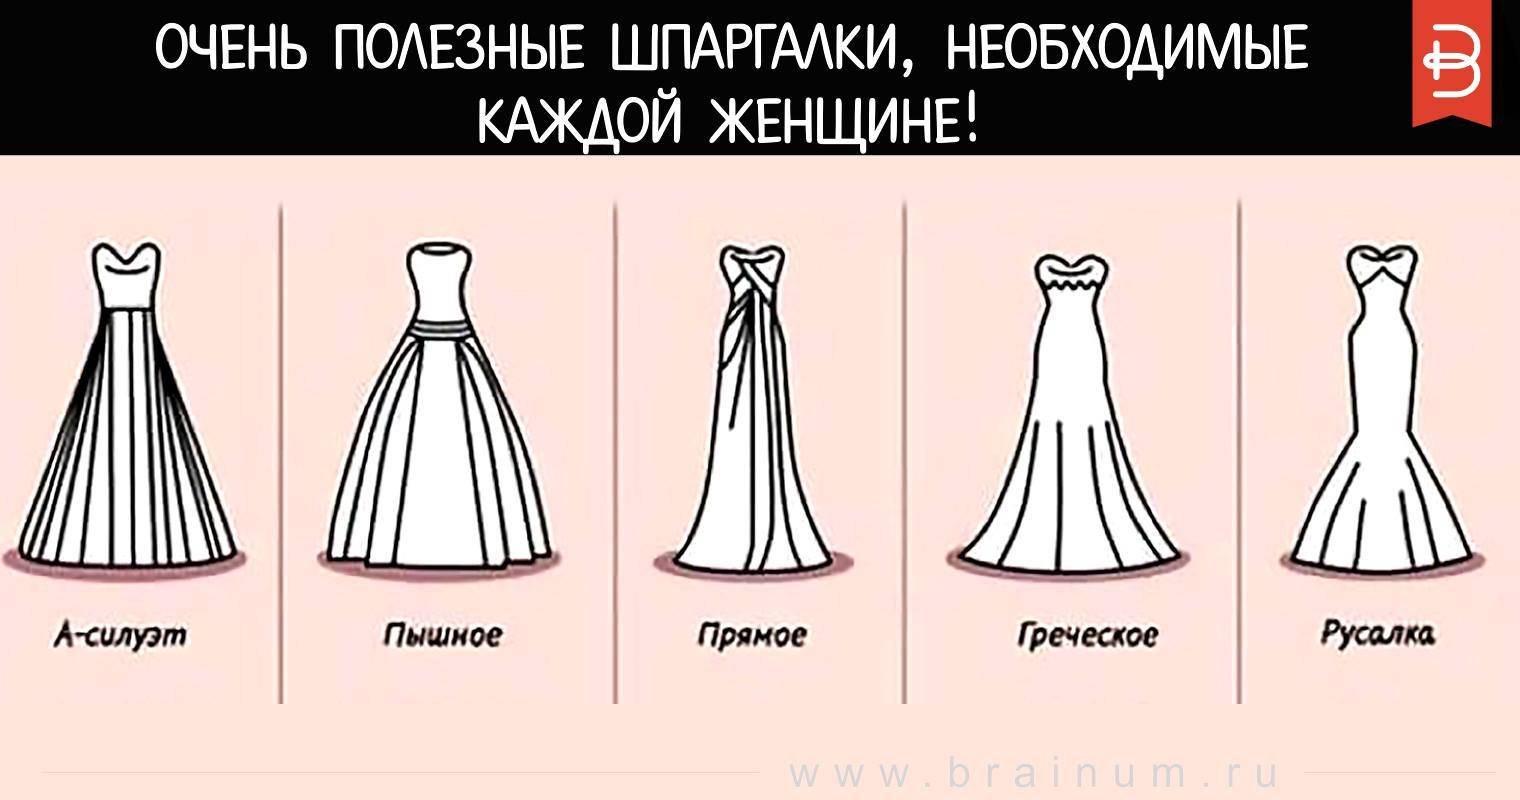 Свадебные приметы и суеверия: про платье, про кольца, про каравай, про день свадьбы